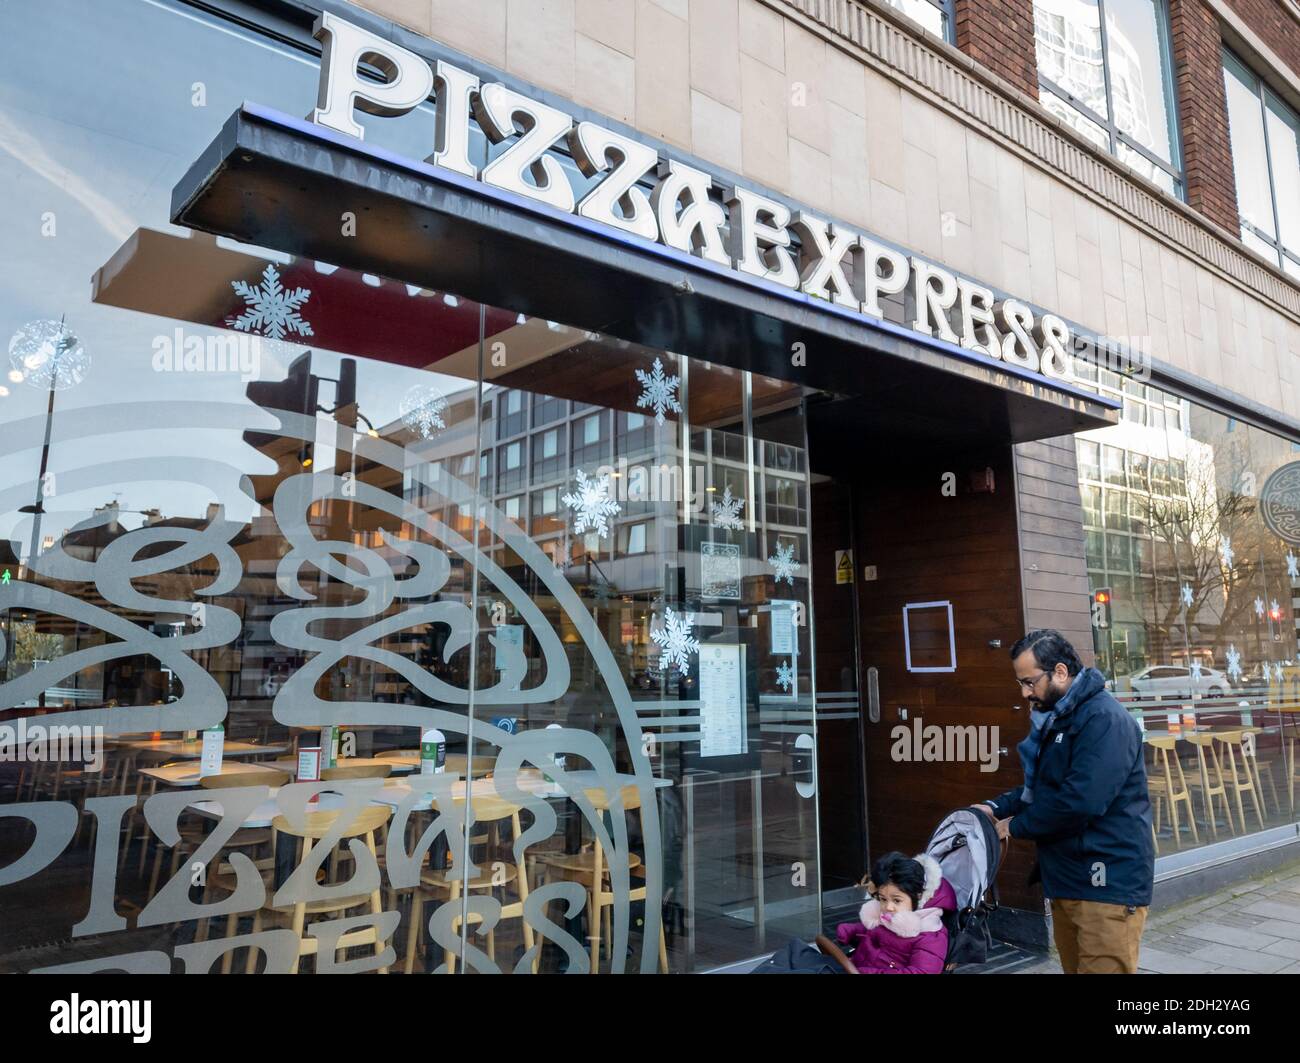 La facciata, i segni e il logo di una filiale di Pizza Express. Una catena multinazionale di fast food. Foto Stock